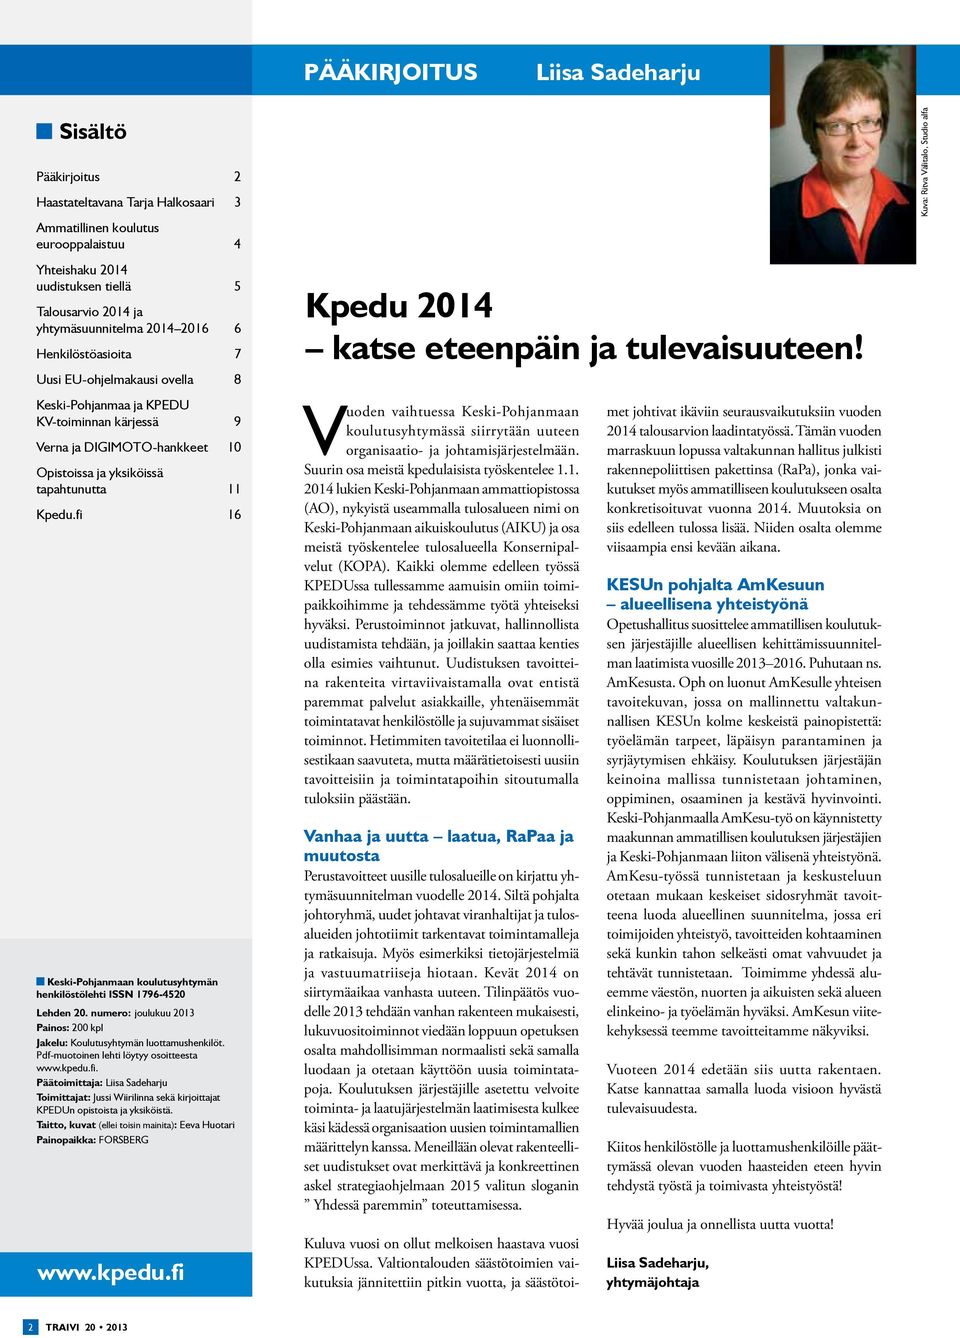 Kpedu.fi 16 Keski-Pohjanmaan koulutusyhtymän henkilöstölehti ISSN 1796-4520 Lehden 20. numero: joulukuu 2013 Painos: 200 kpl Jakelu: Koulutusyhtymän luottamushenkilöt.